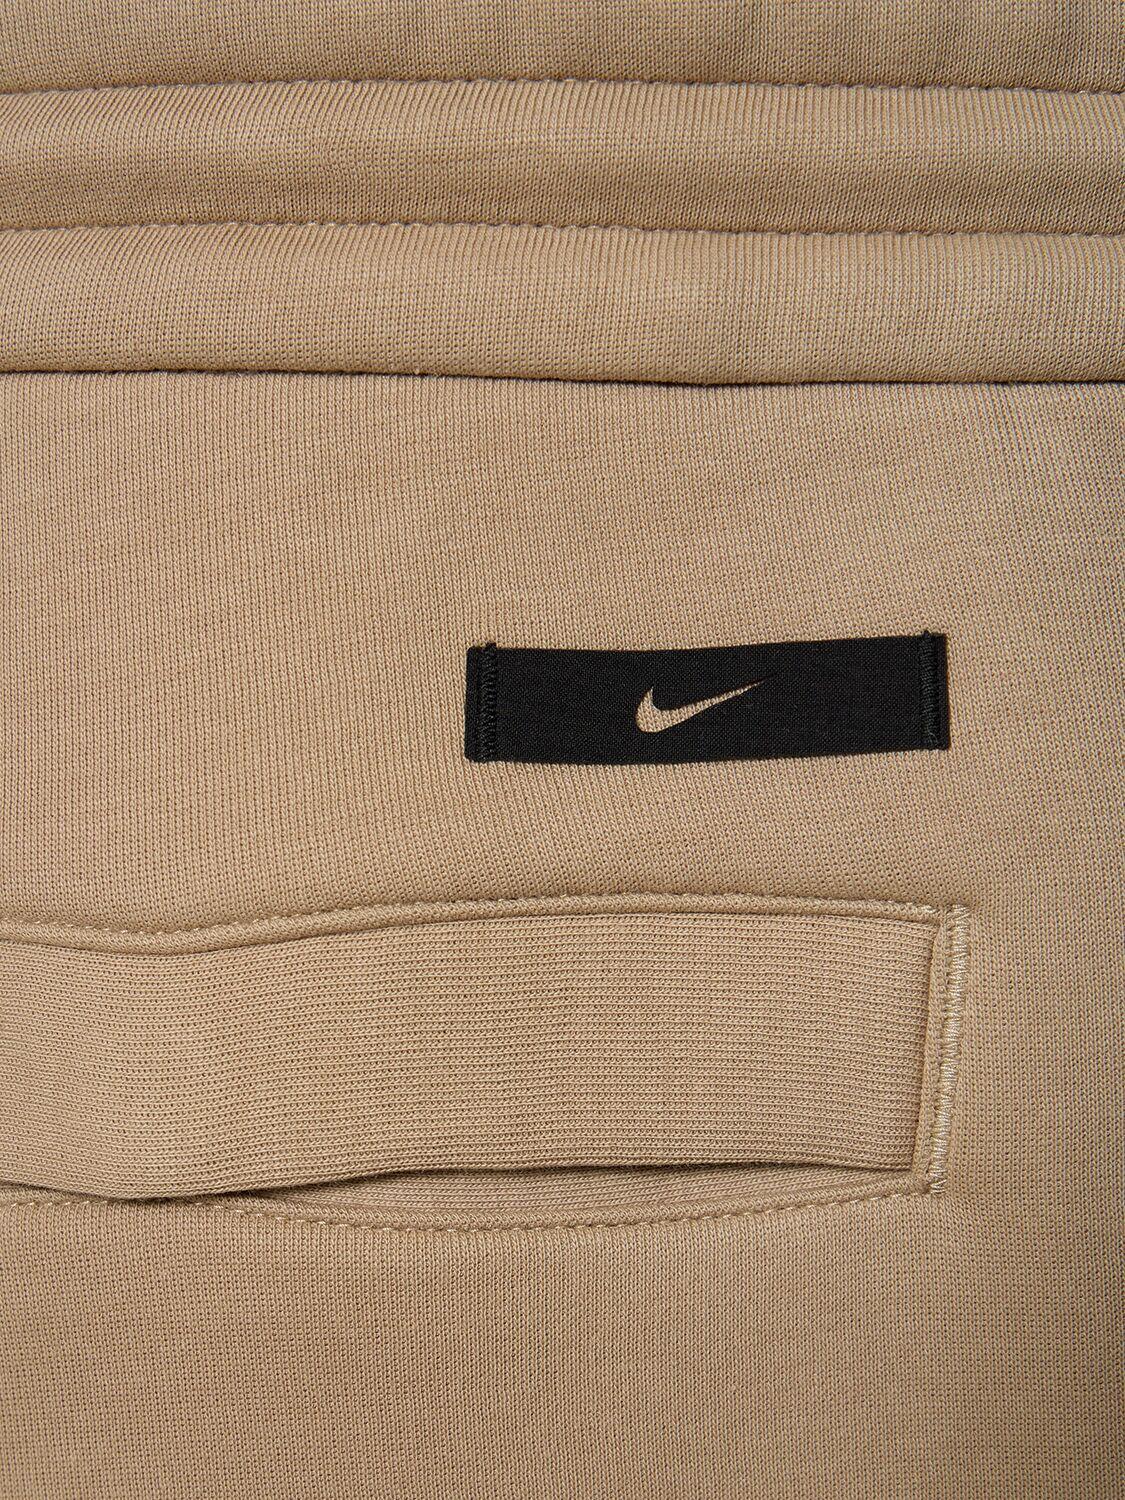 Nike Sportswear Essential Women's Fleece Pants, 53% OFF